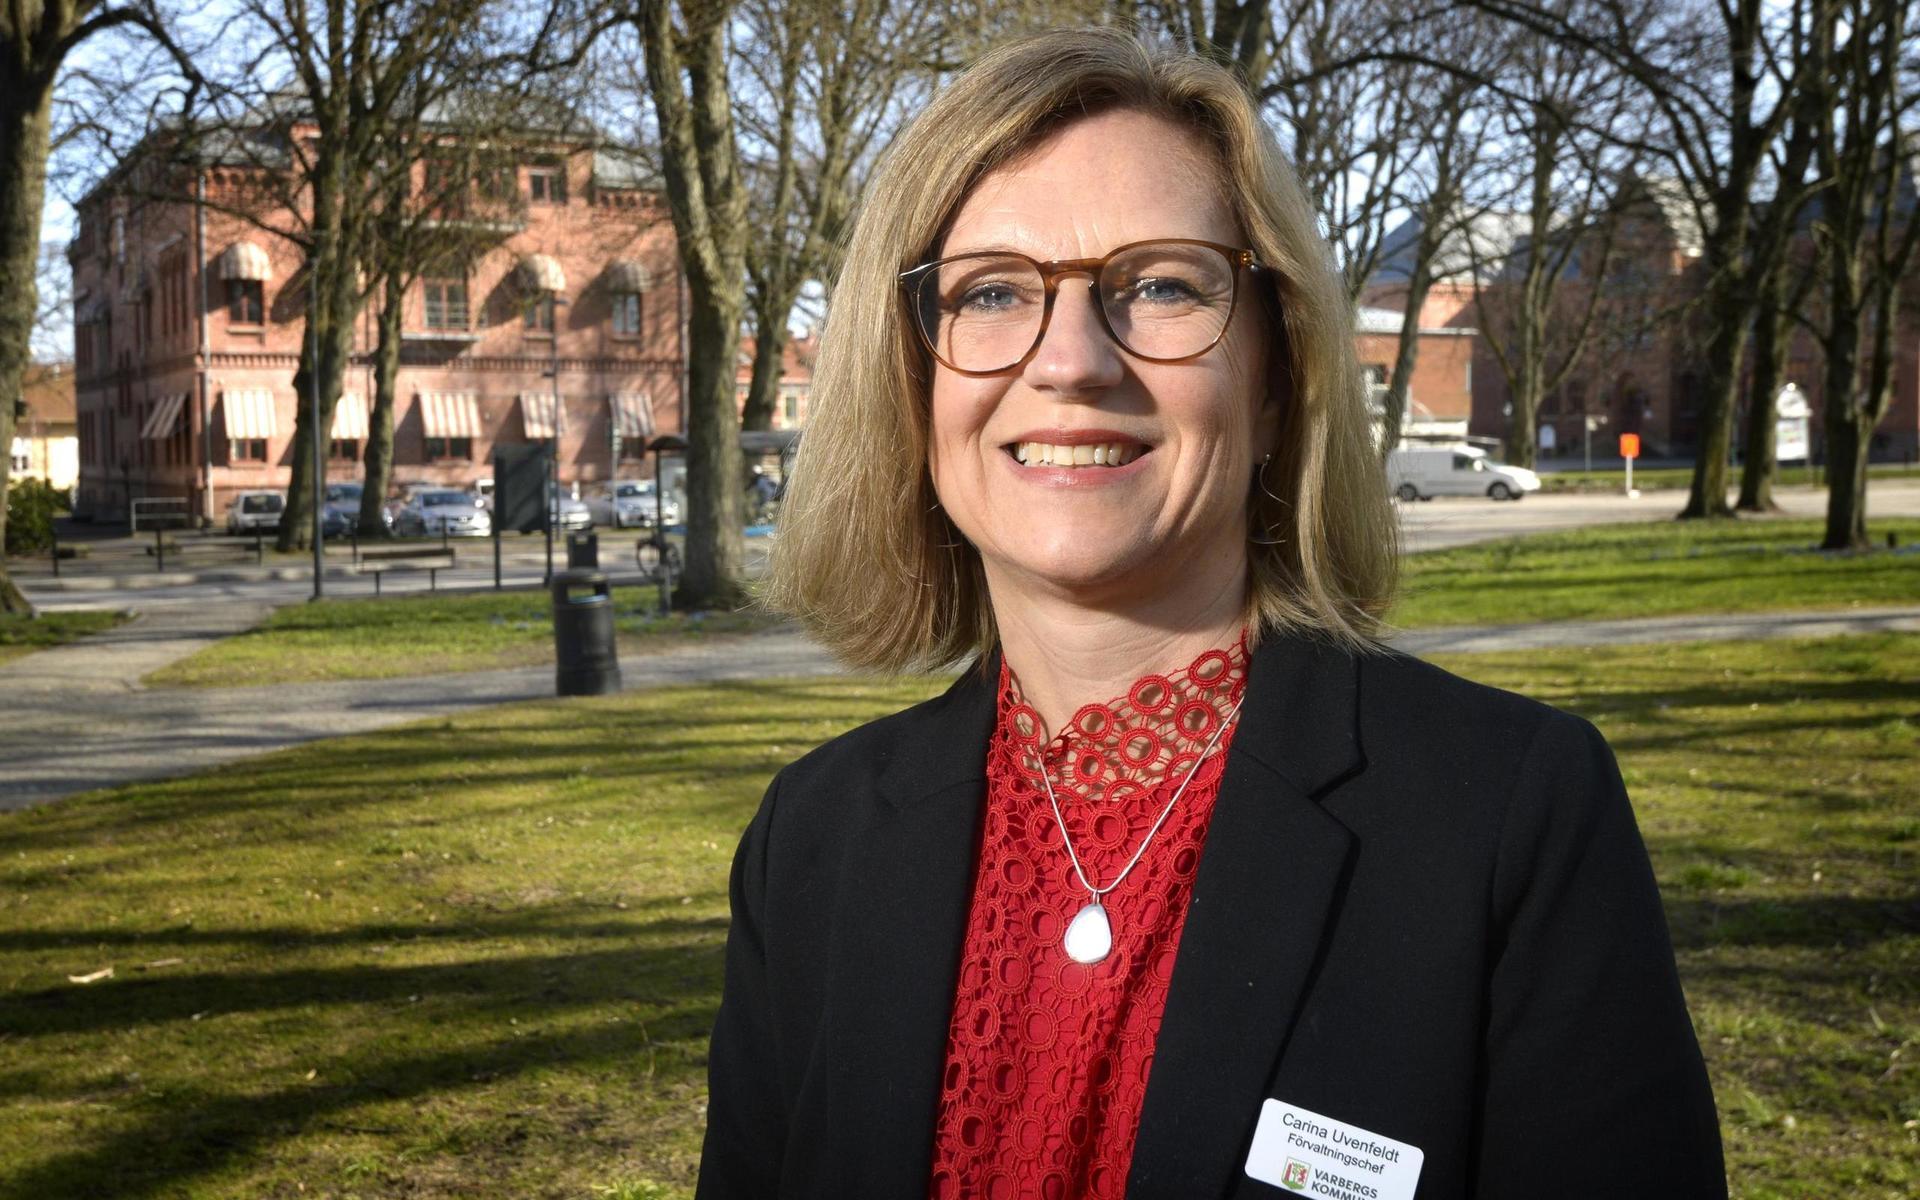 Carina Uvenfeldt har en lång bakgrund inom skolans värld. Både som lärare, rektor och på förvaltningsnivå. Senast kommer hon från tjänsten som skolchef i Gislaveds kommun.